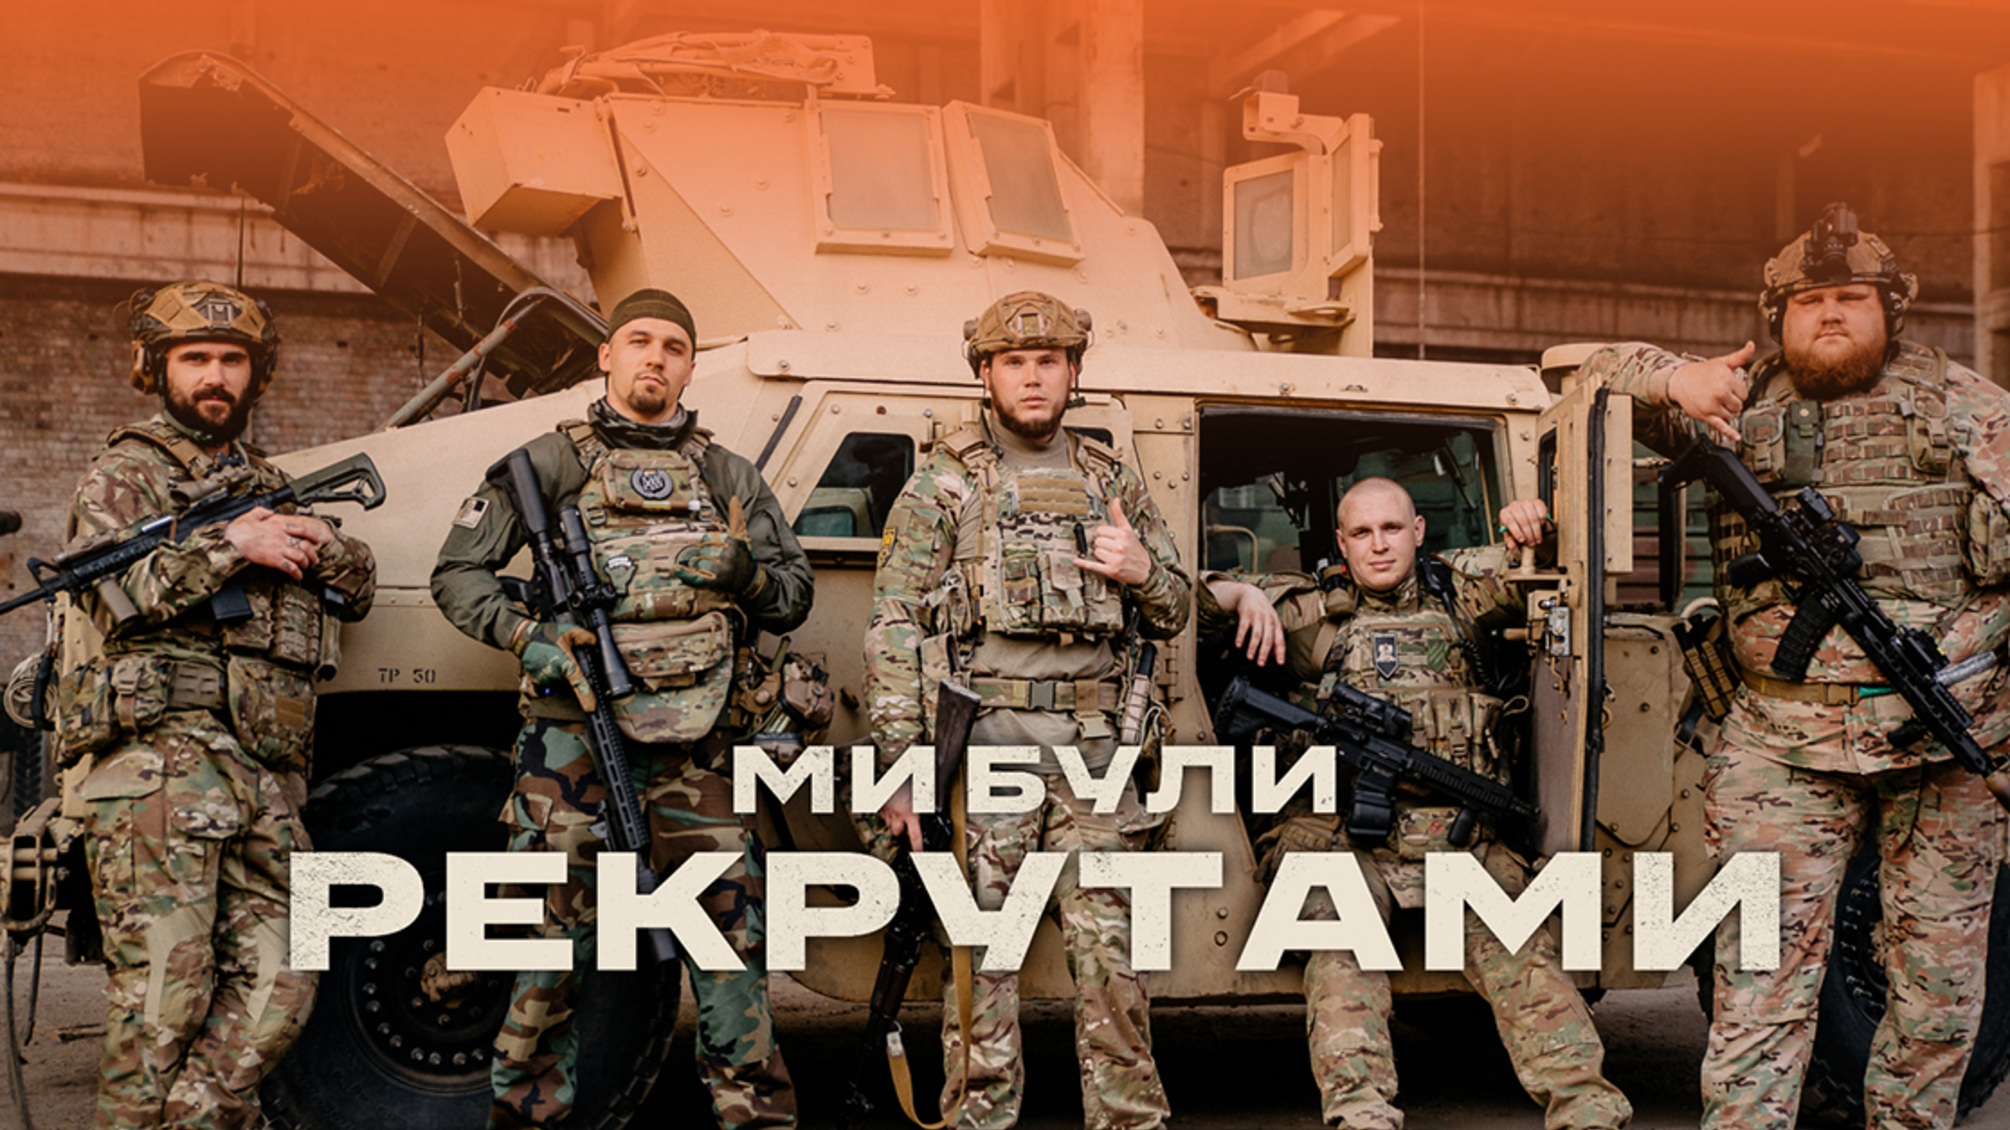 На Netflix вийшов документальний фільм 'Ми були рекрутами' про українських героїв